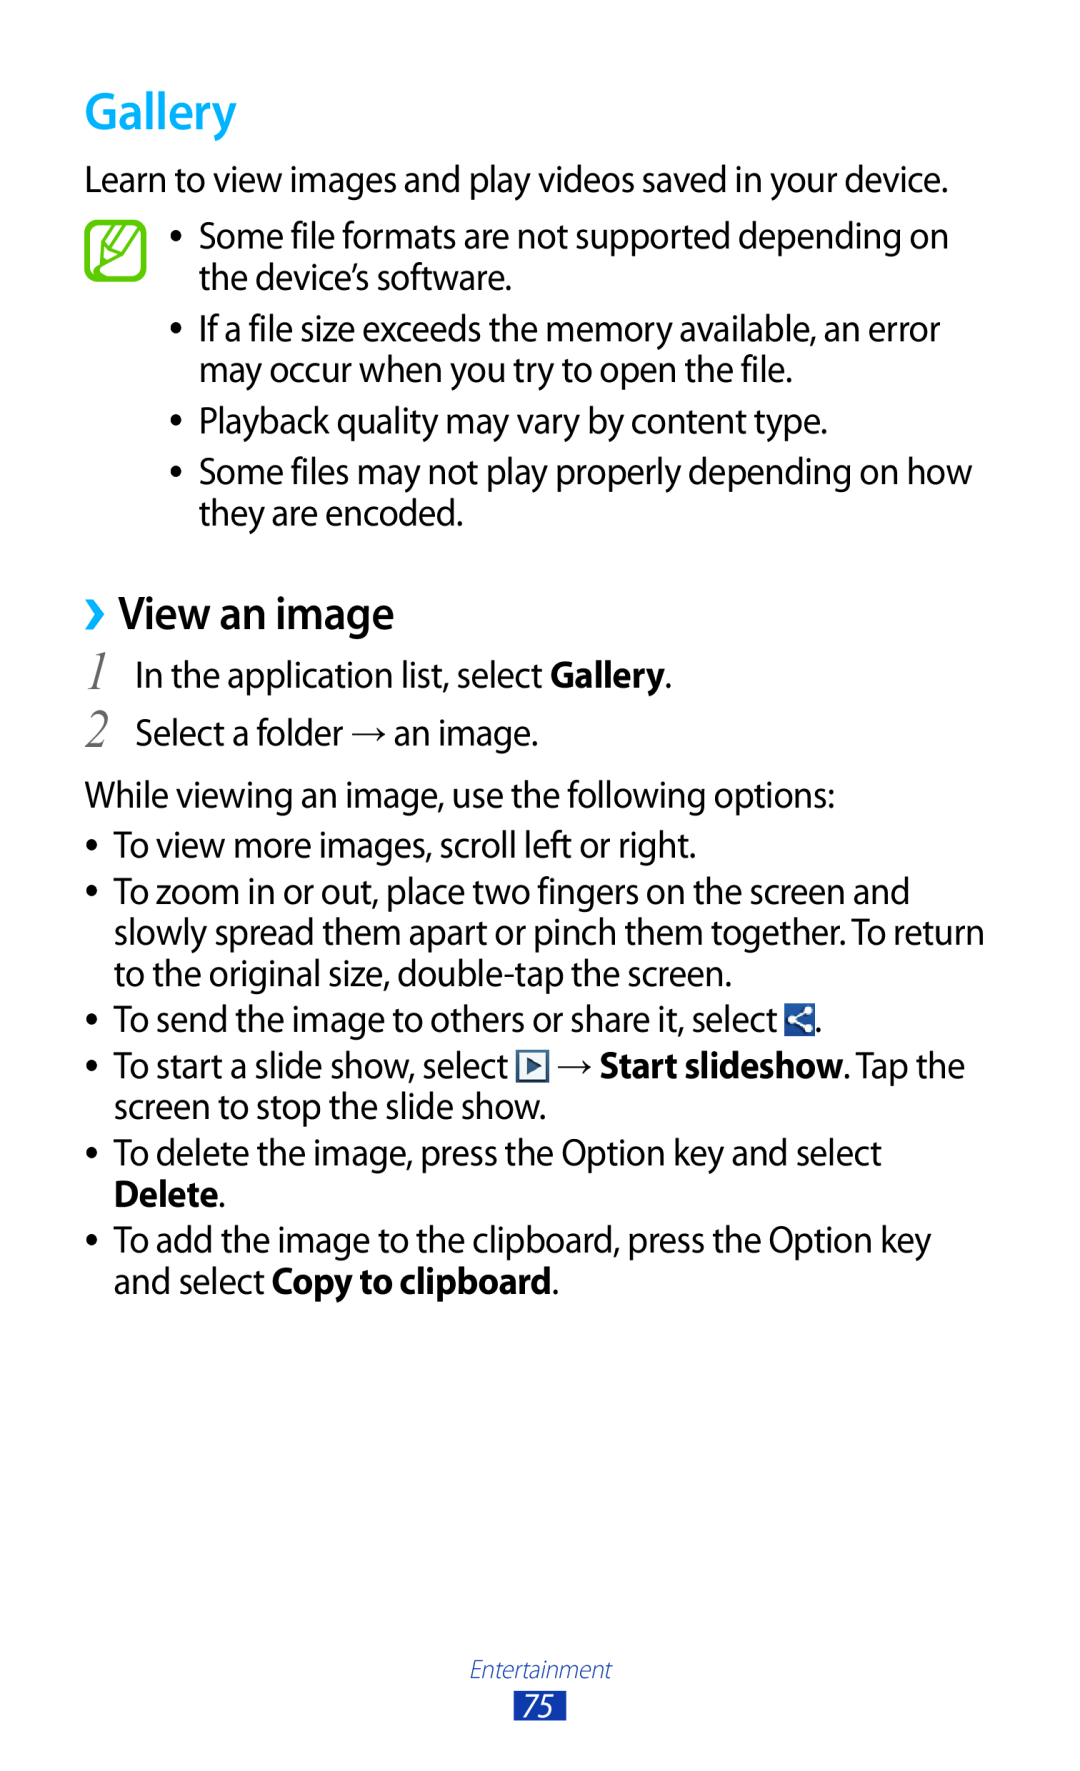 Samsung GT-S7560ZKADBT, GT-S7560ZKAVDR, GT-S7560ZKAPRT, GT-S7560UWAWIN, GT-S7560UWAVDR manual Gallery, ››View an image 